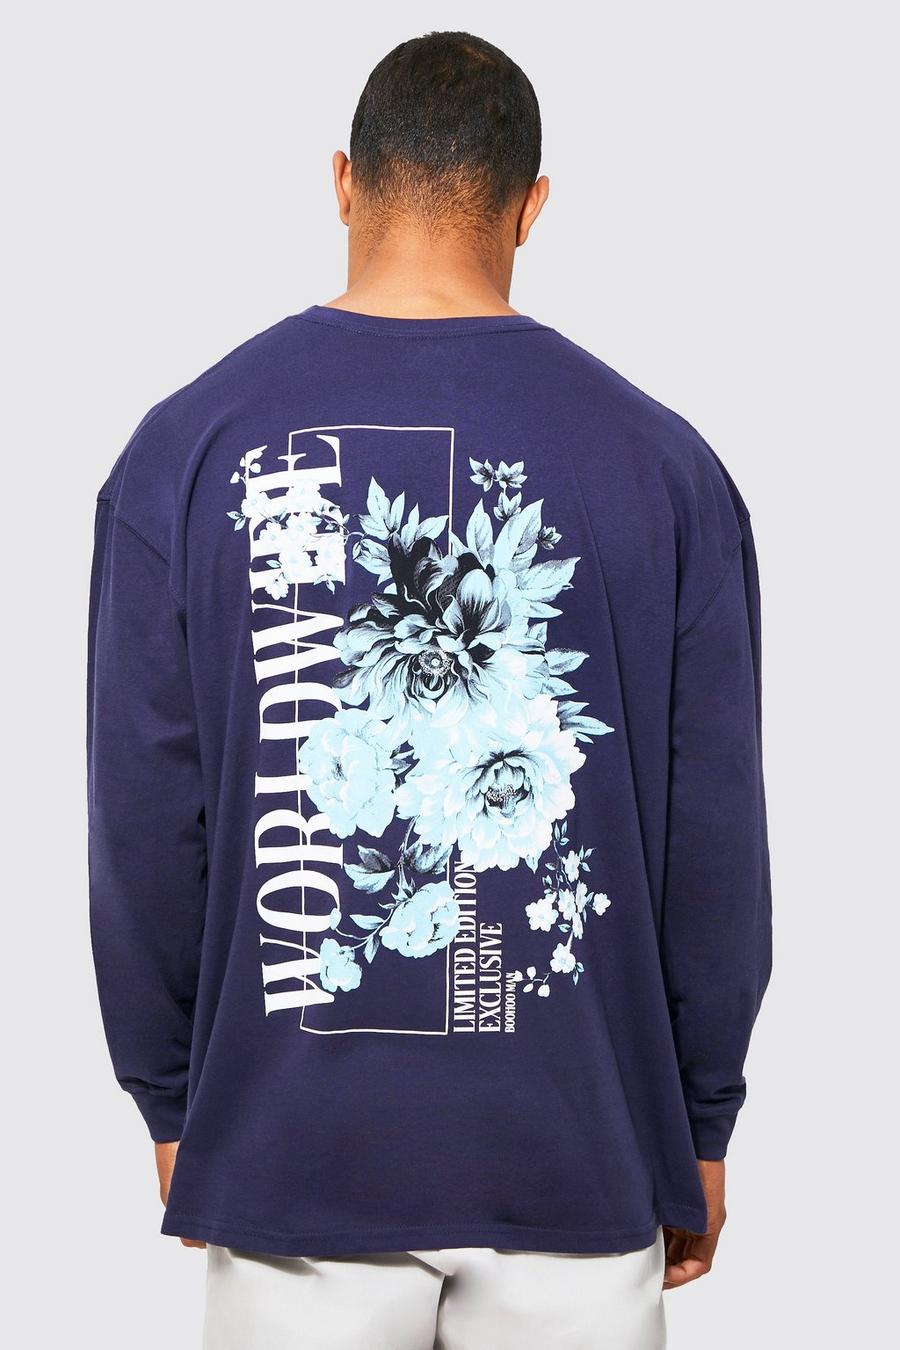 Camiseta oversize de manga larga con estampado gráfico de flores, Navy azul marino